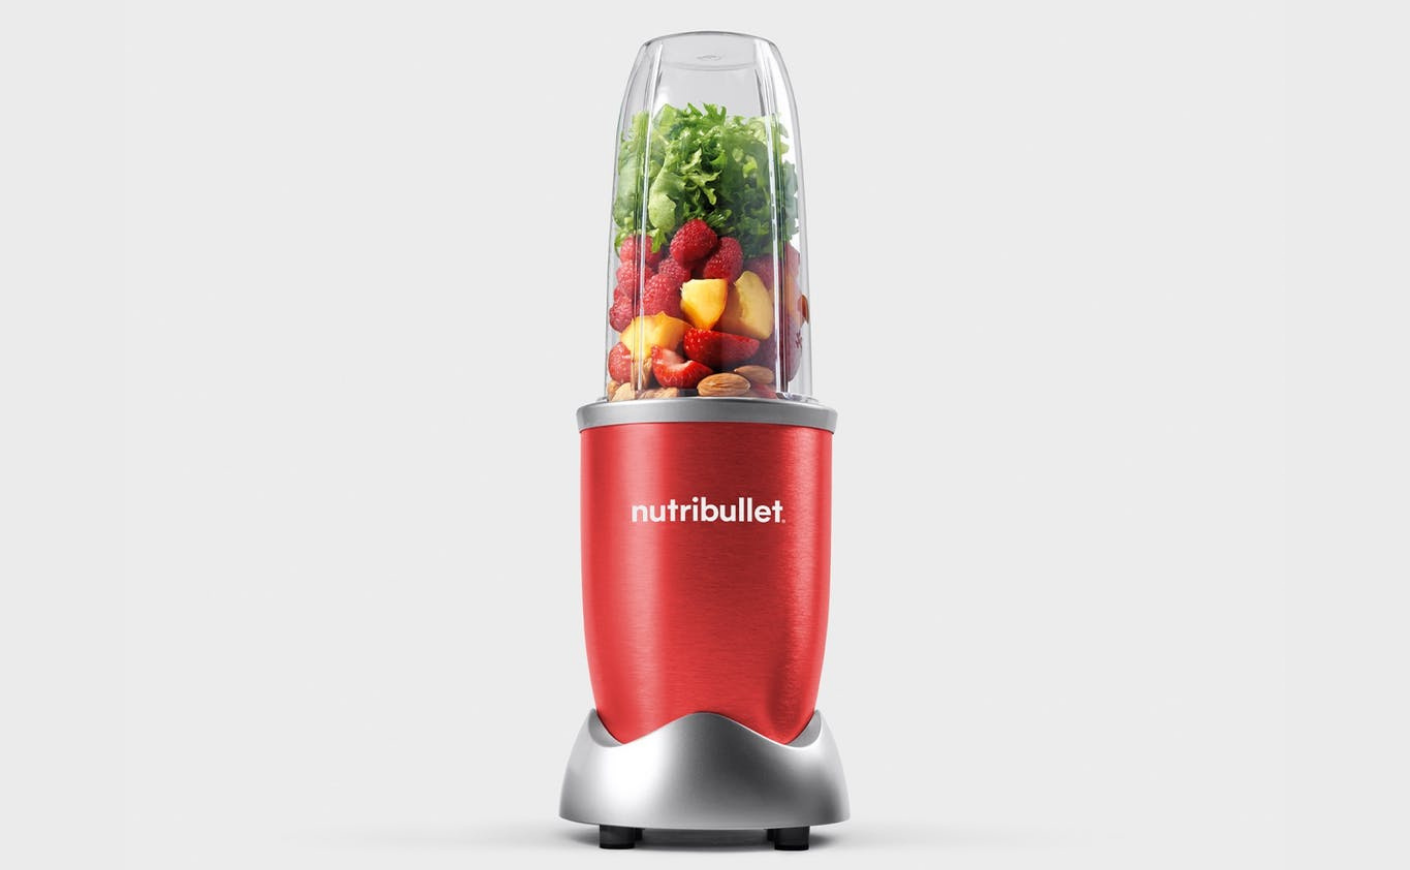 red nutribullet blender with fruits and vegetables